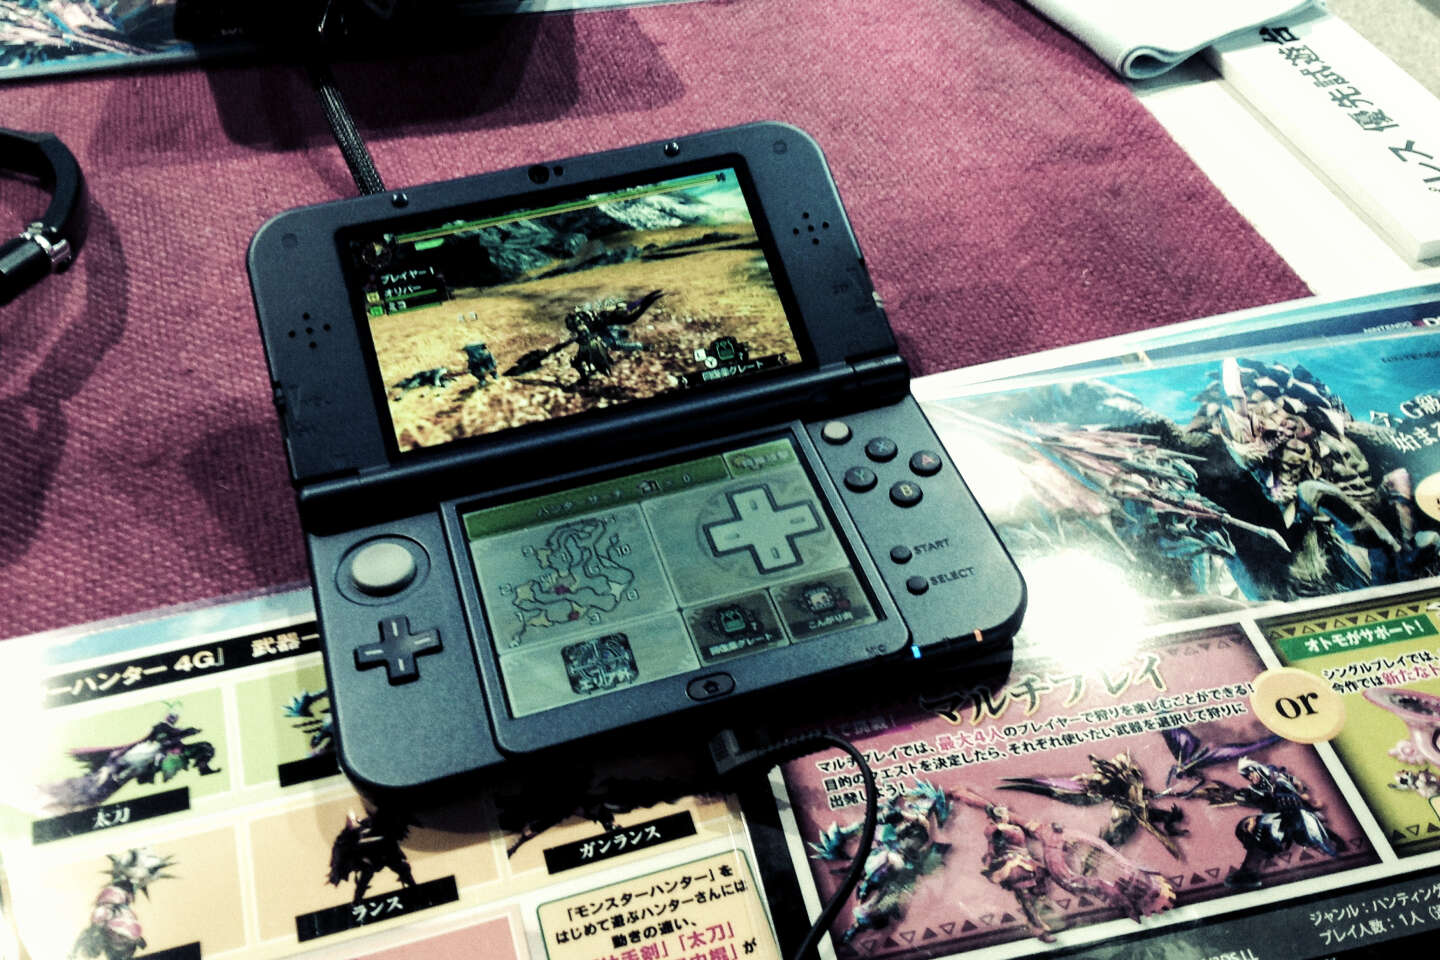 Jeux pour Nintendo DS : Consoles portatives de Nintendo